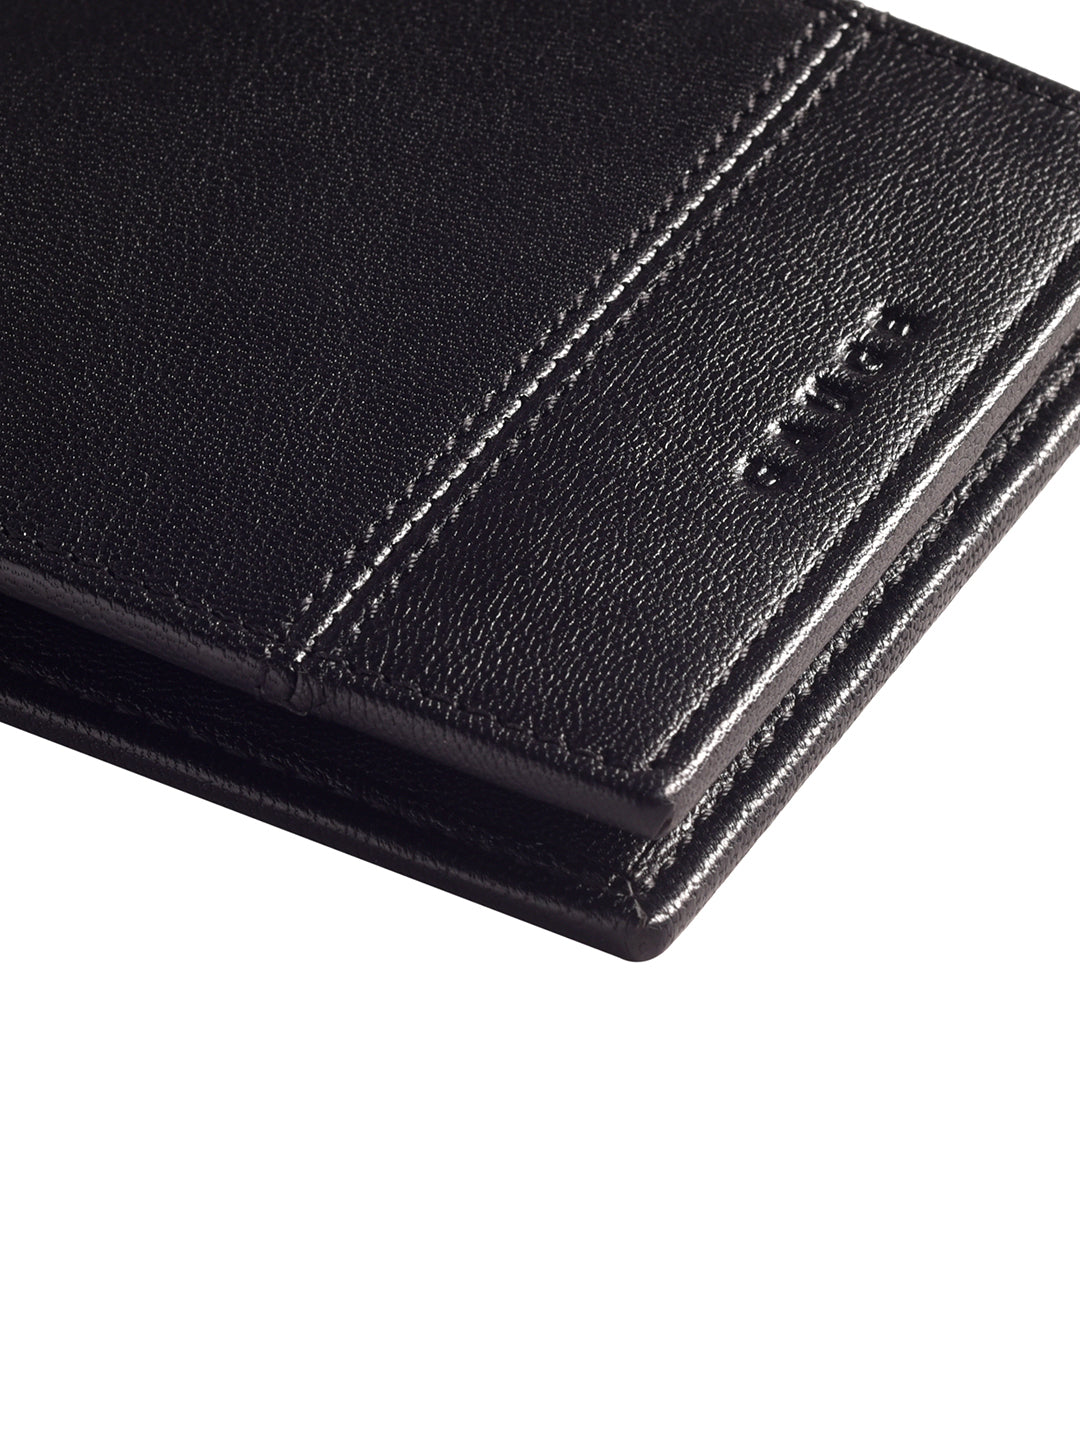 Classic black Bi-fold  wallet